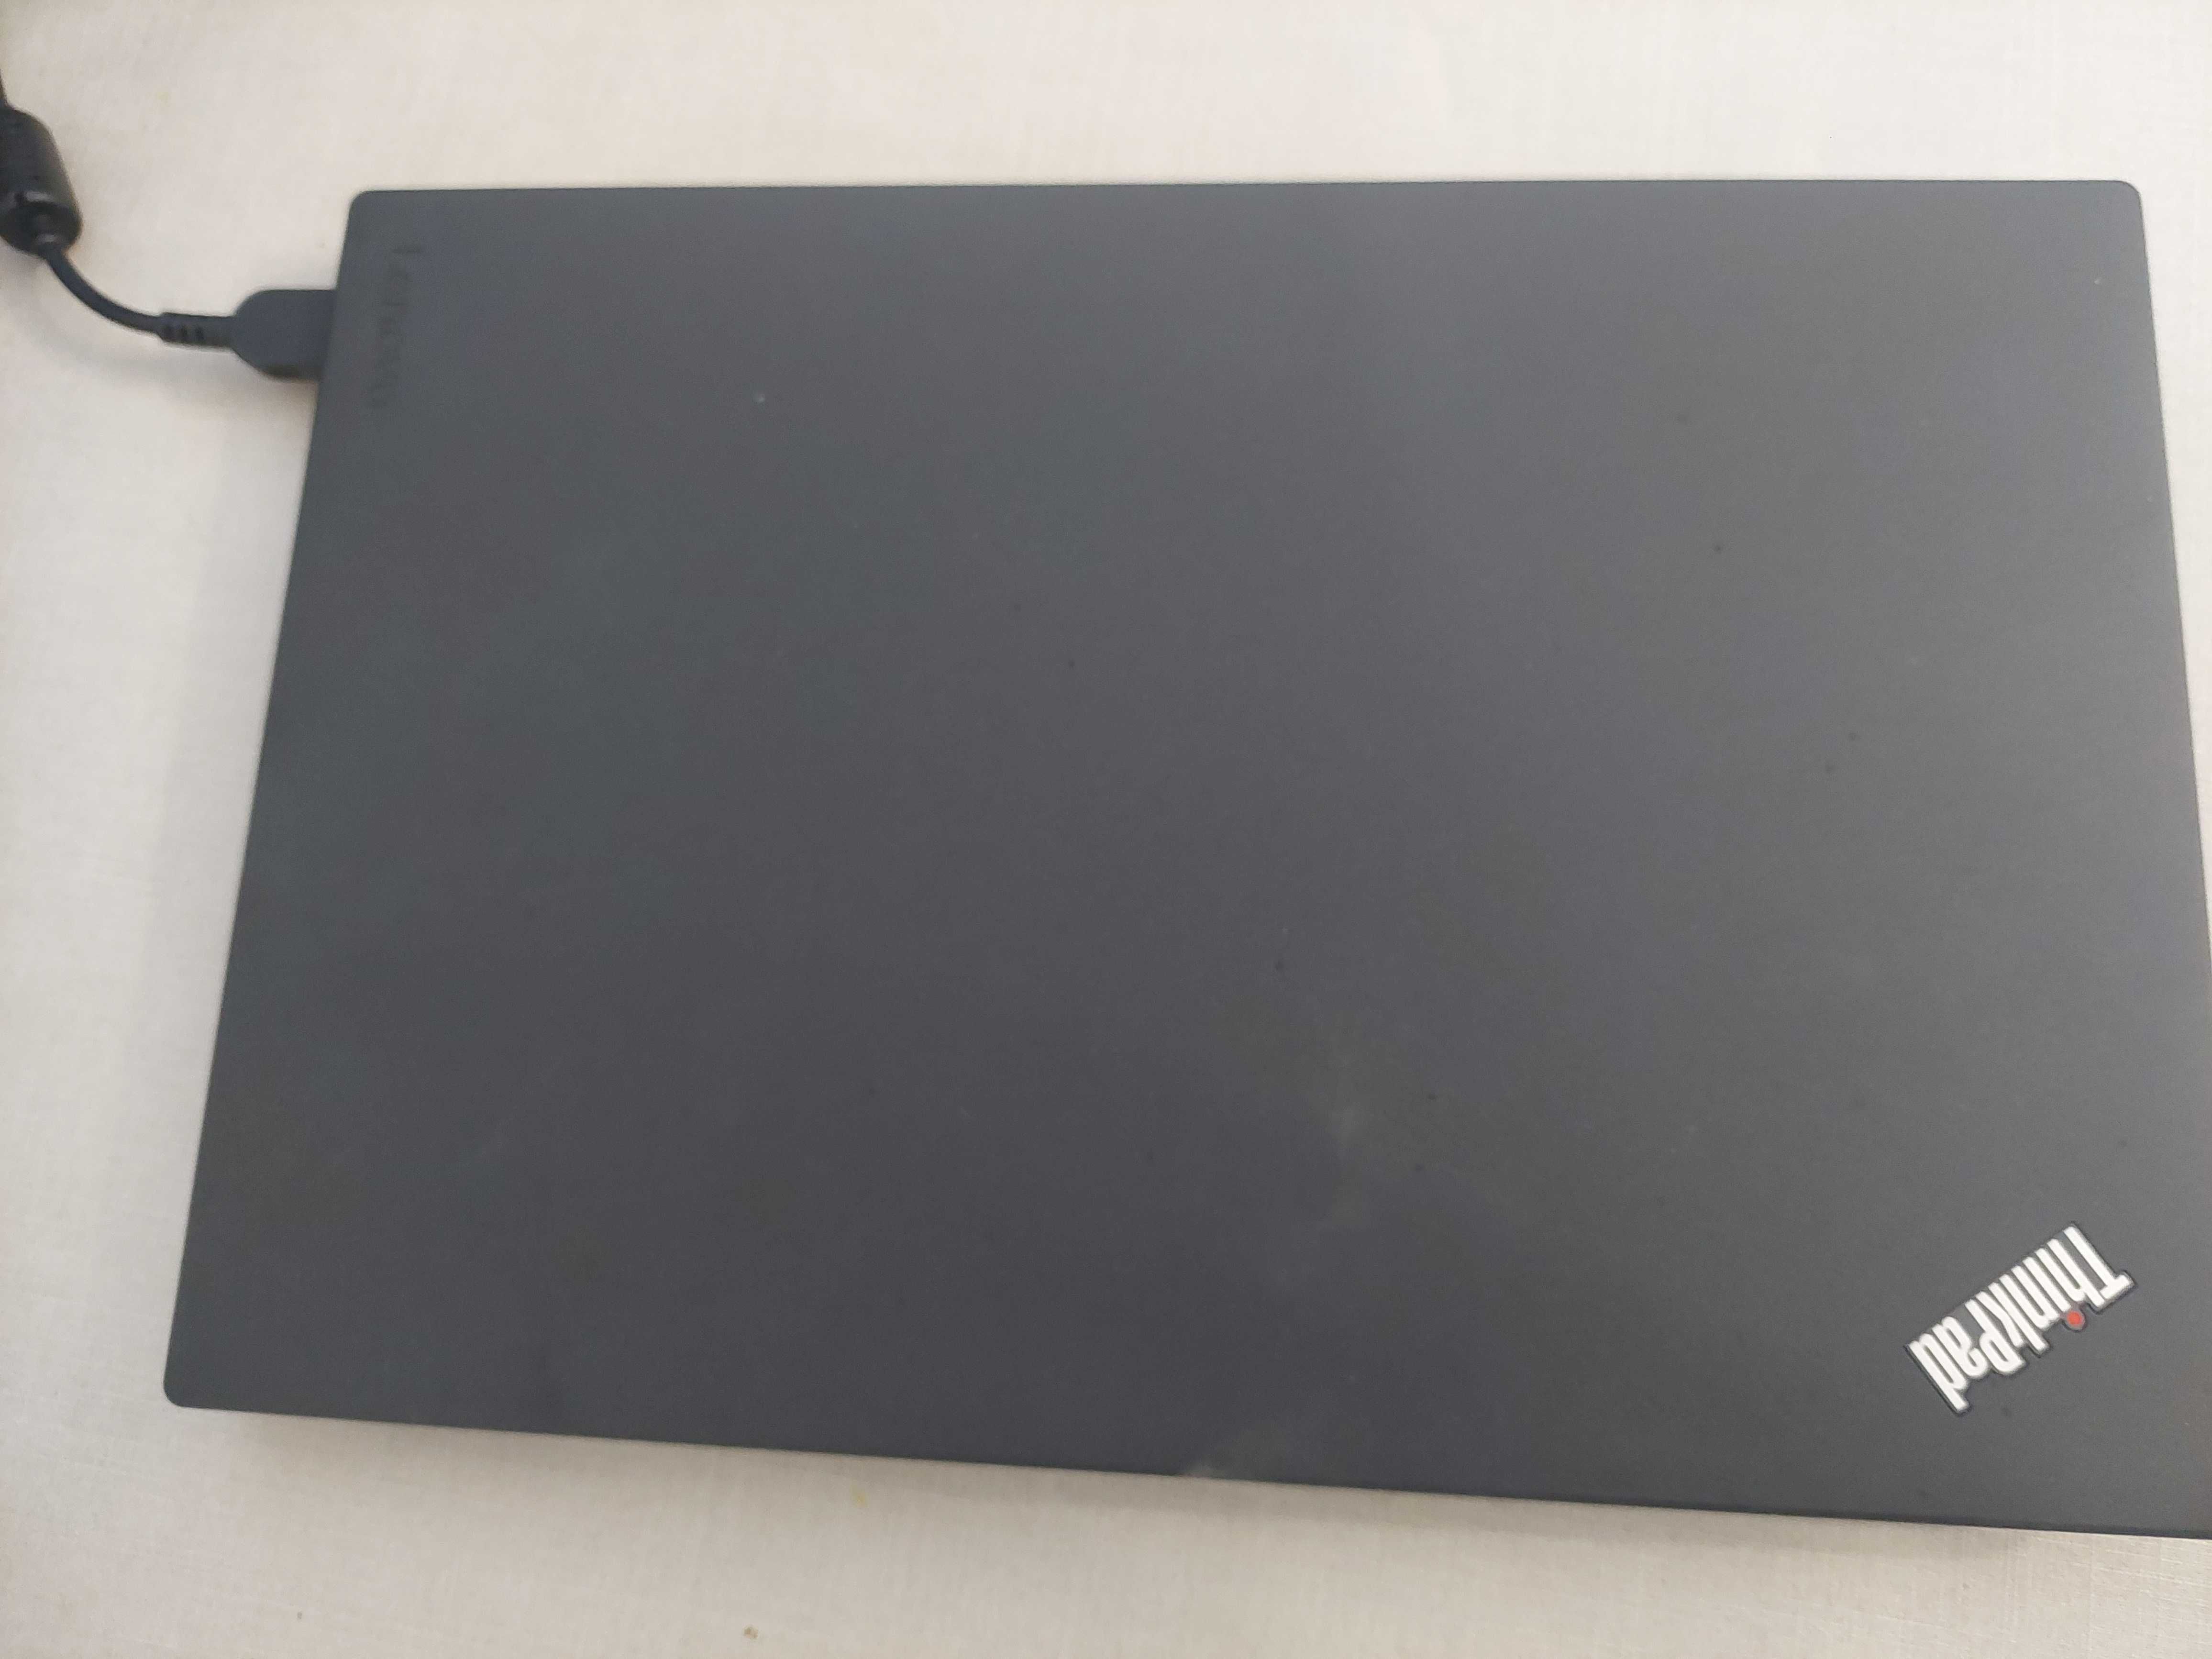 Lenovo Thinkpad x260 I5 8gb RAM 256gb SSD